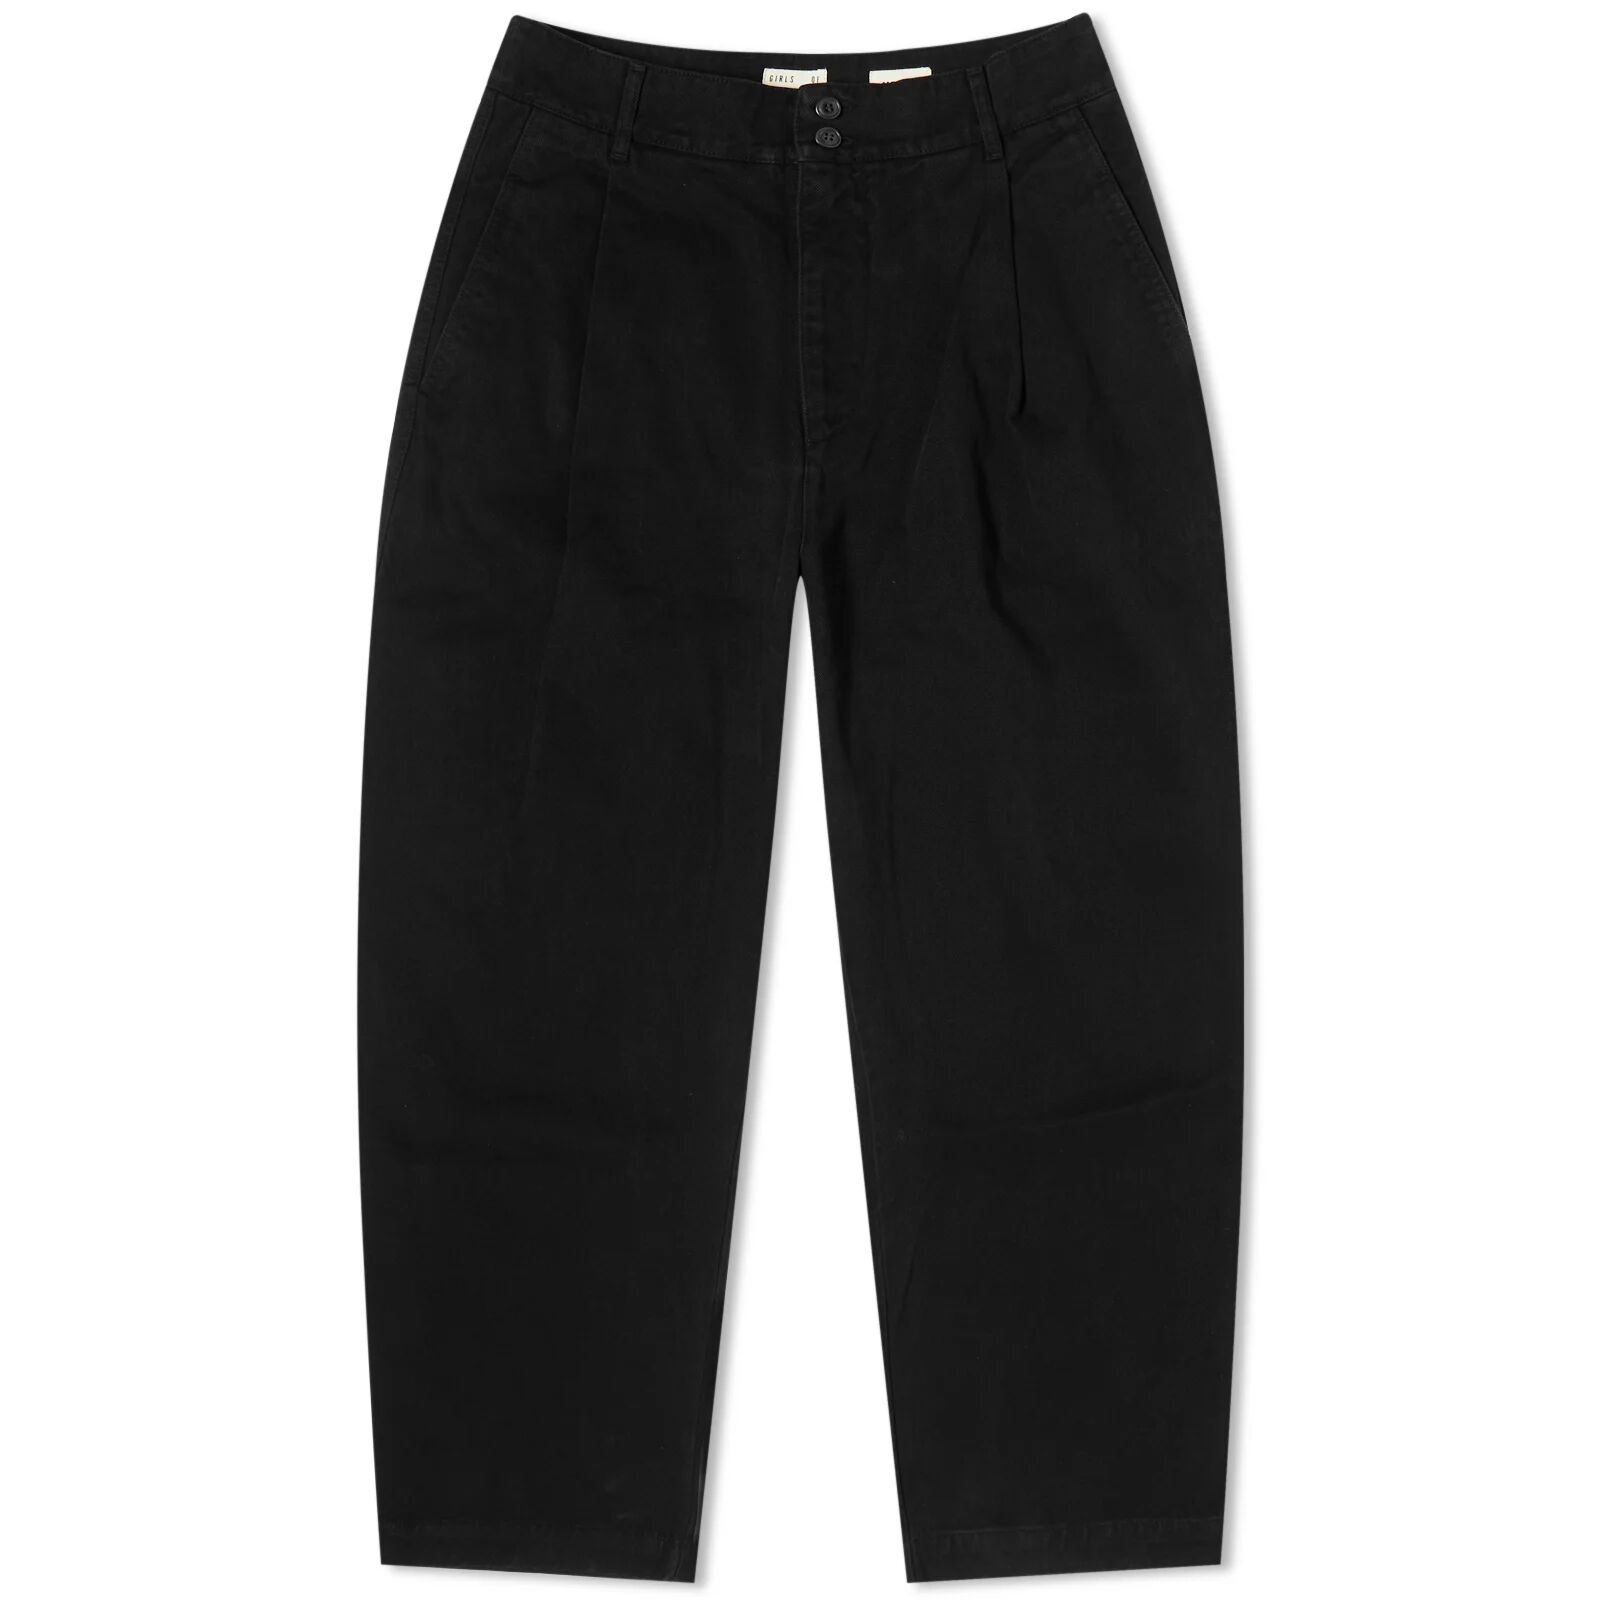 Girls of Dust Women's Workwear Pants in Black, Size Small